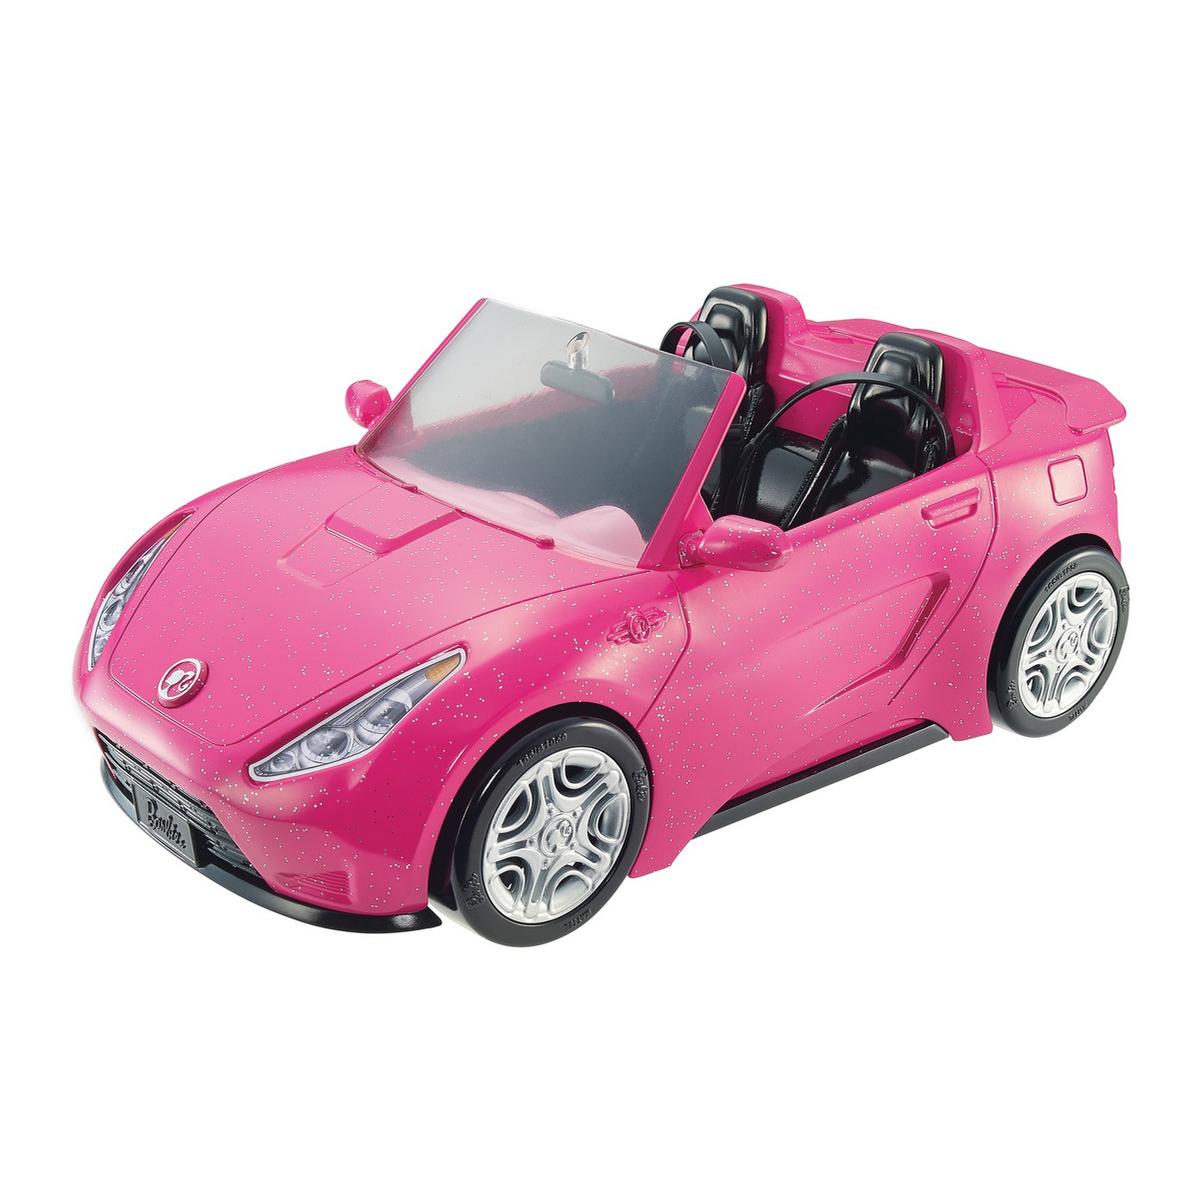 Jogos de Decorar o Carro Novo da Barbie no Meninas Jogos